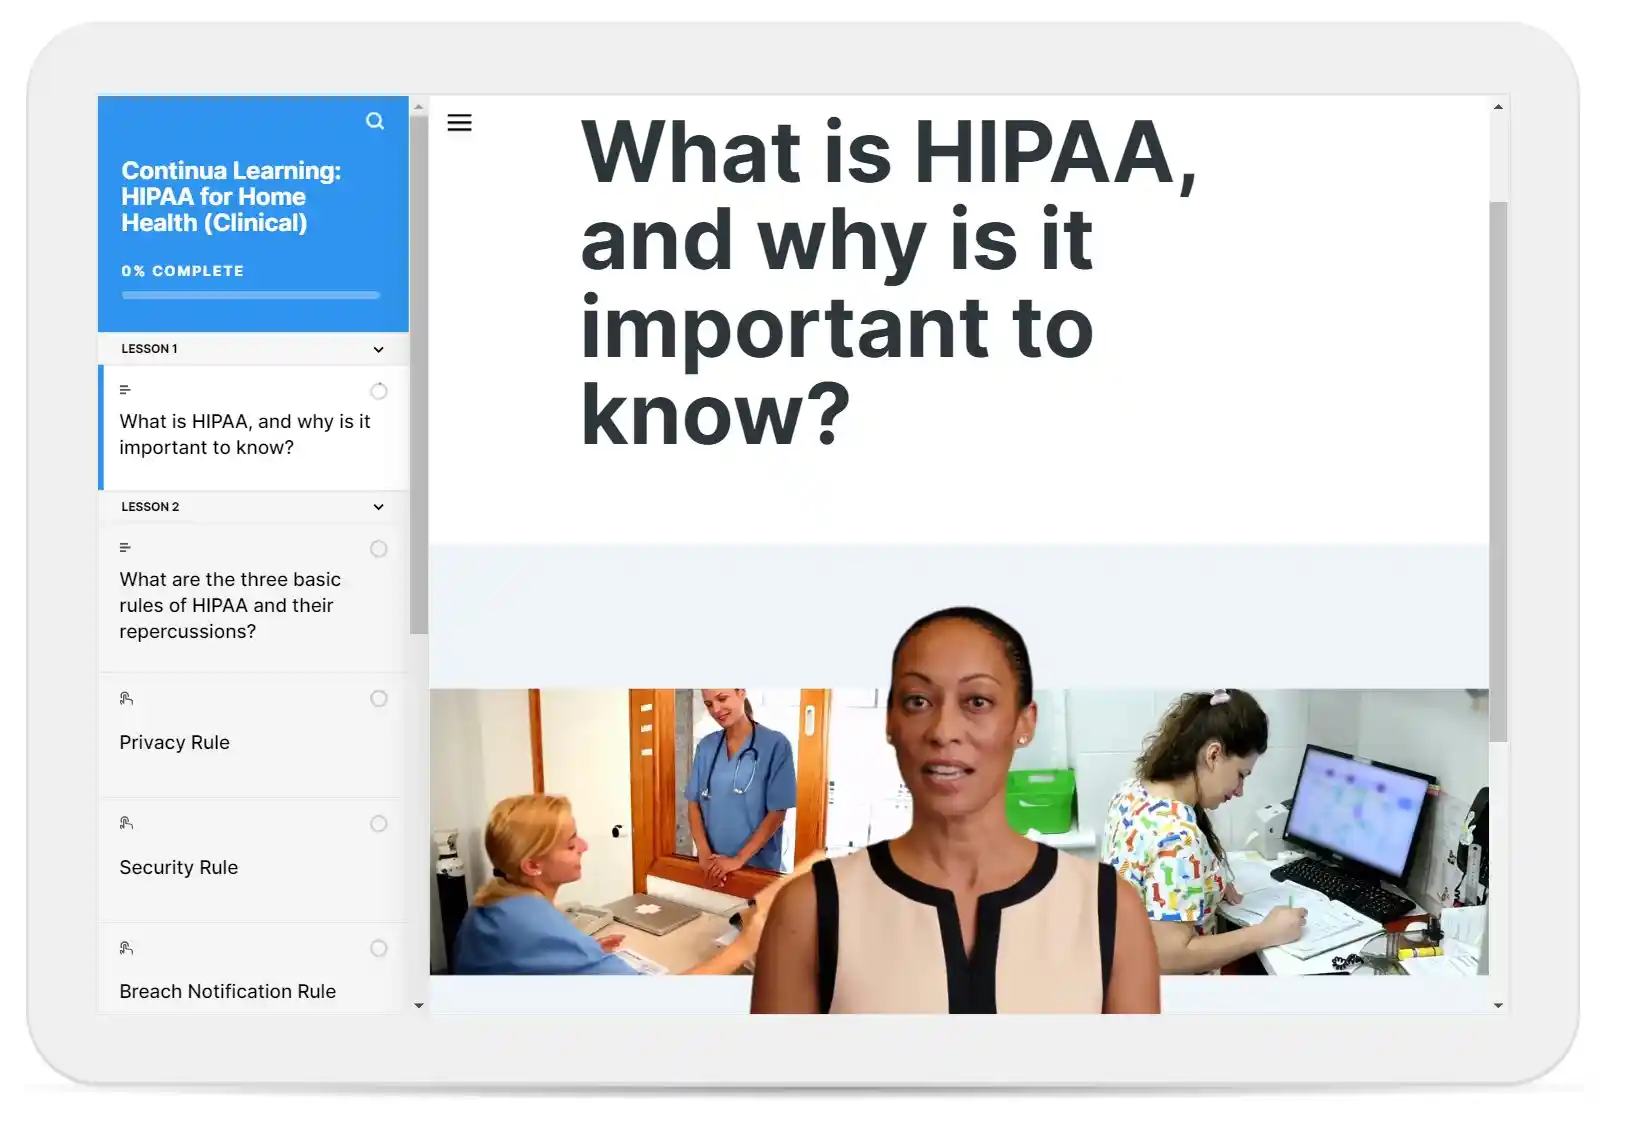 HIPAA Compliance for Home Health Care Course Description